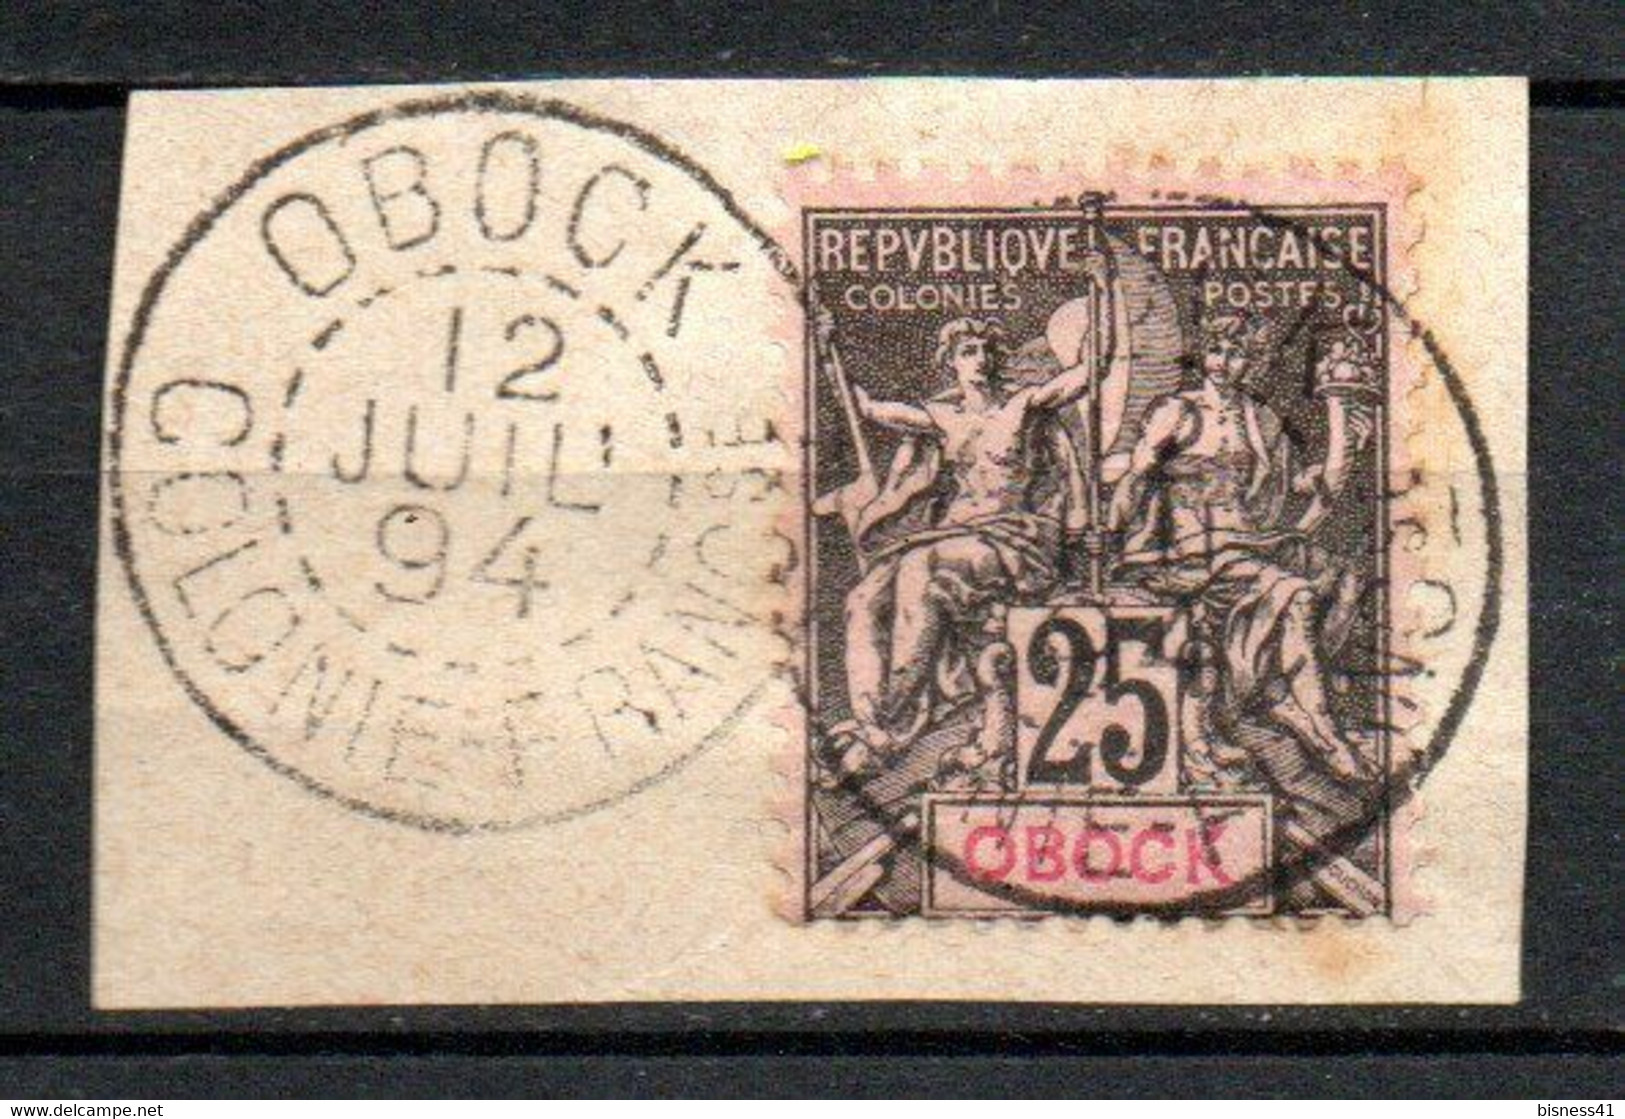 Col24 Colonies Obock N° 39 Oblitéré Cote 29,00€ - Used Stamps